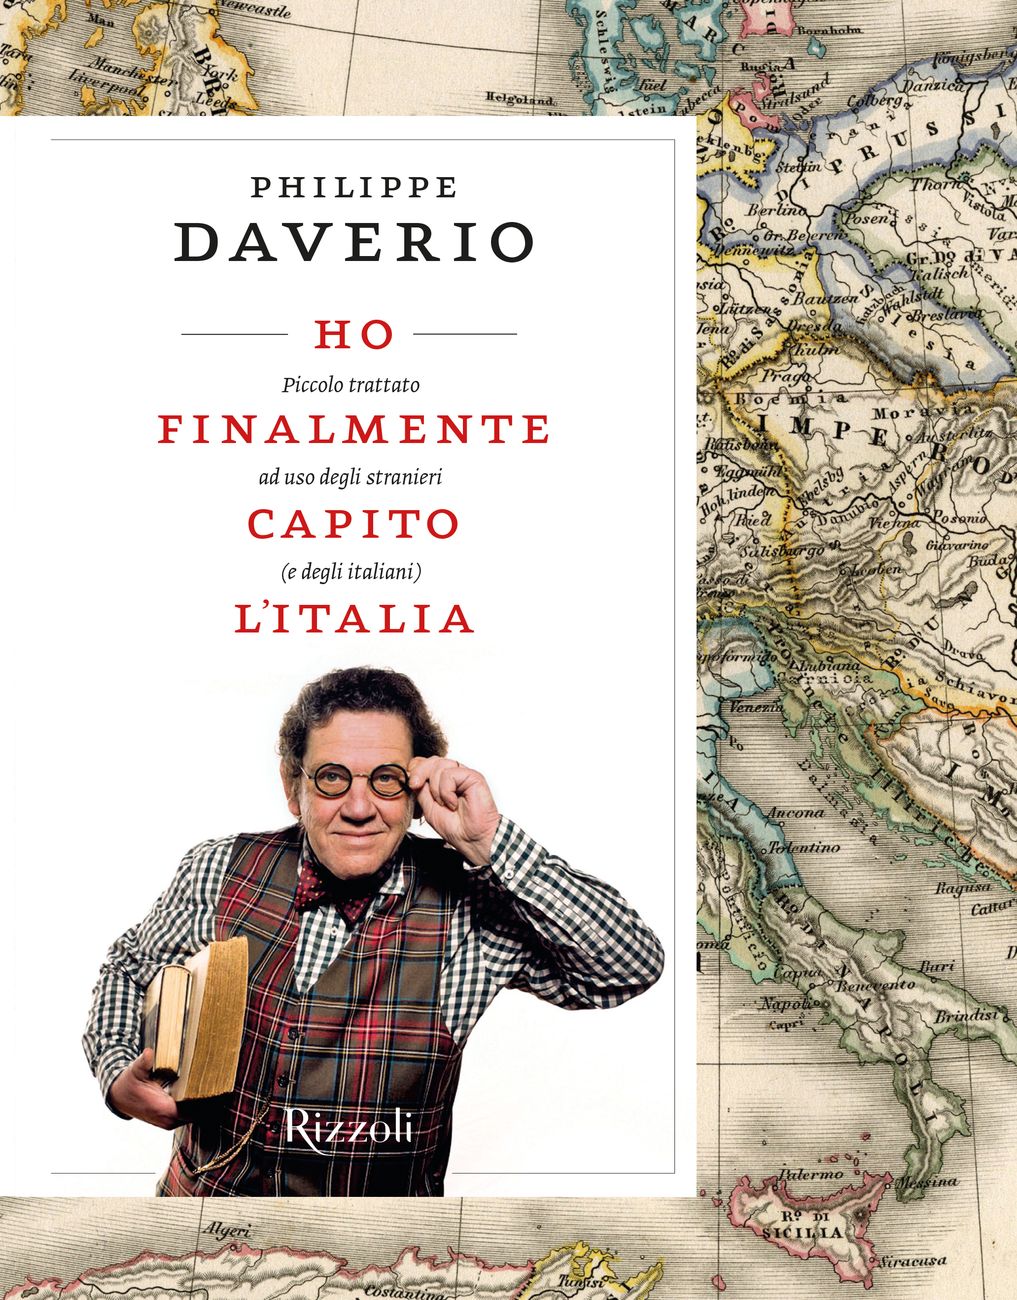 Philippe Daverio, Ho finalmente capito l'Italia (Rizzoli, Milano 2017)